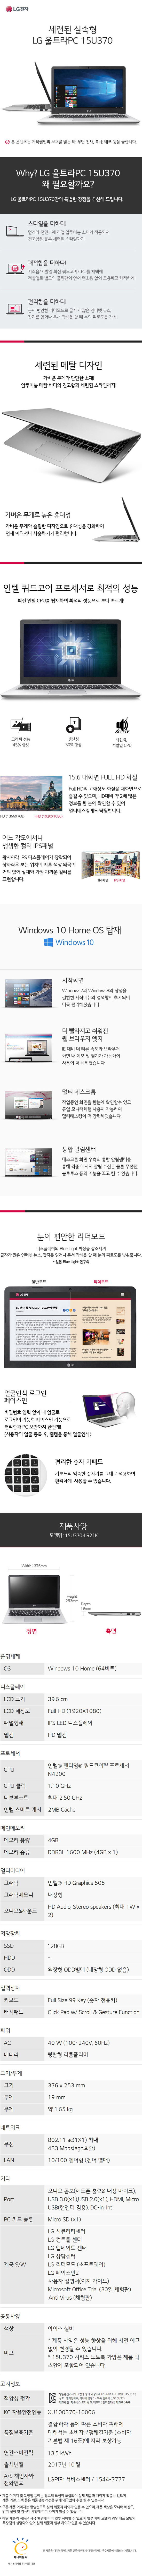 중랑케이블 - LG 엘지울트라PC 15.4인치 (15U370-LR21K) 상세보기